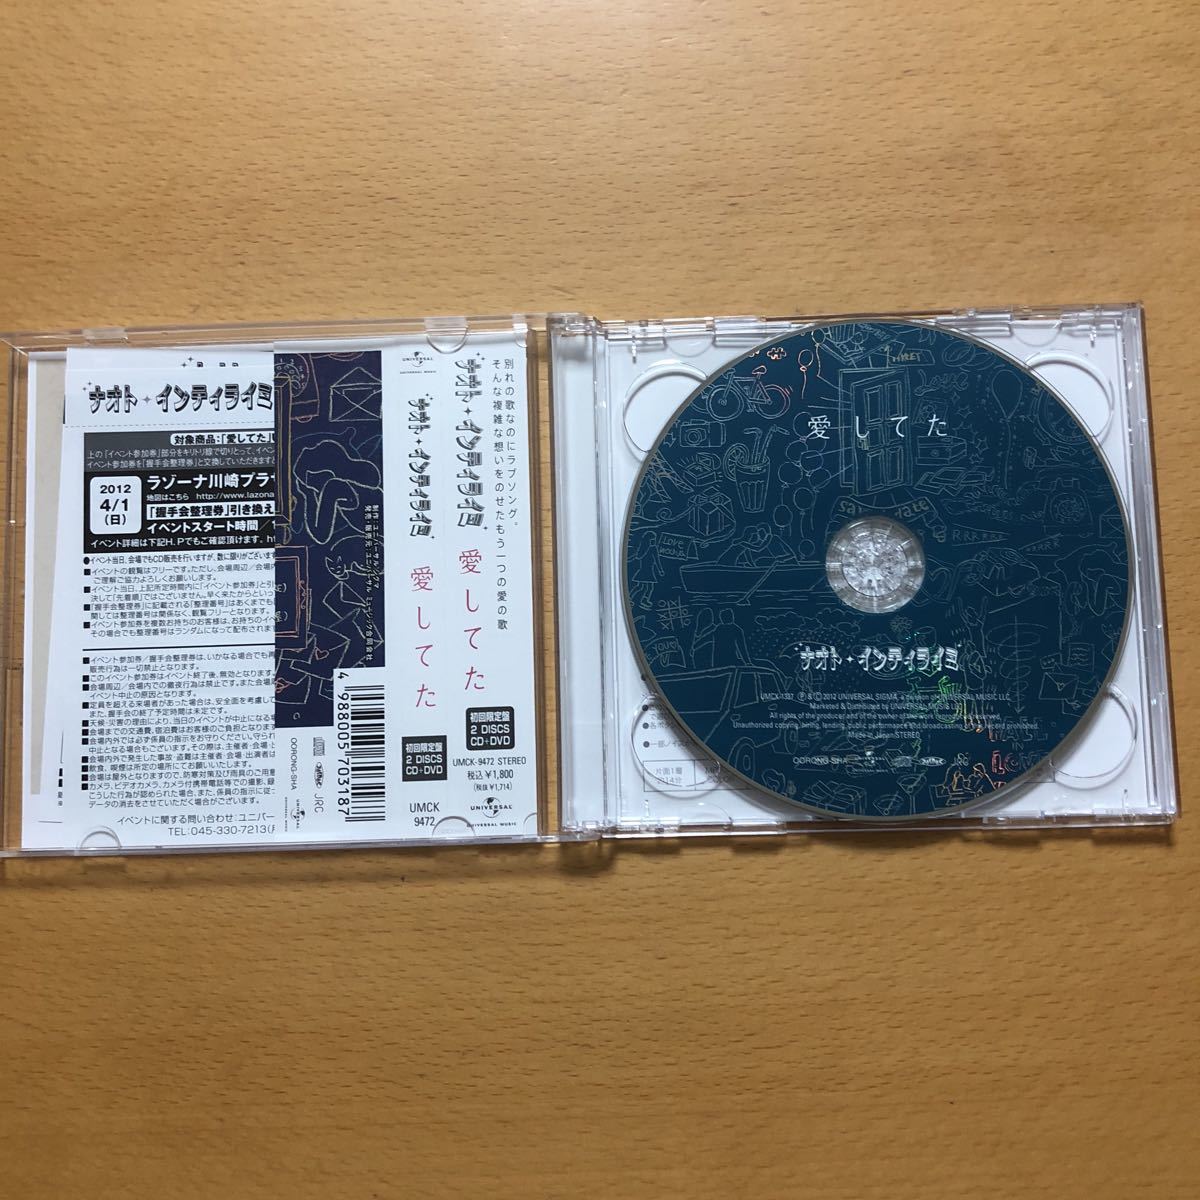 ナオト インティライミ 愛してた 初回限定盤cd Dvd 帯付 美品 33 Product Details Yahoo Auctions Japan Proxy Bidding And Shopping Service From Japan